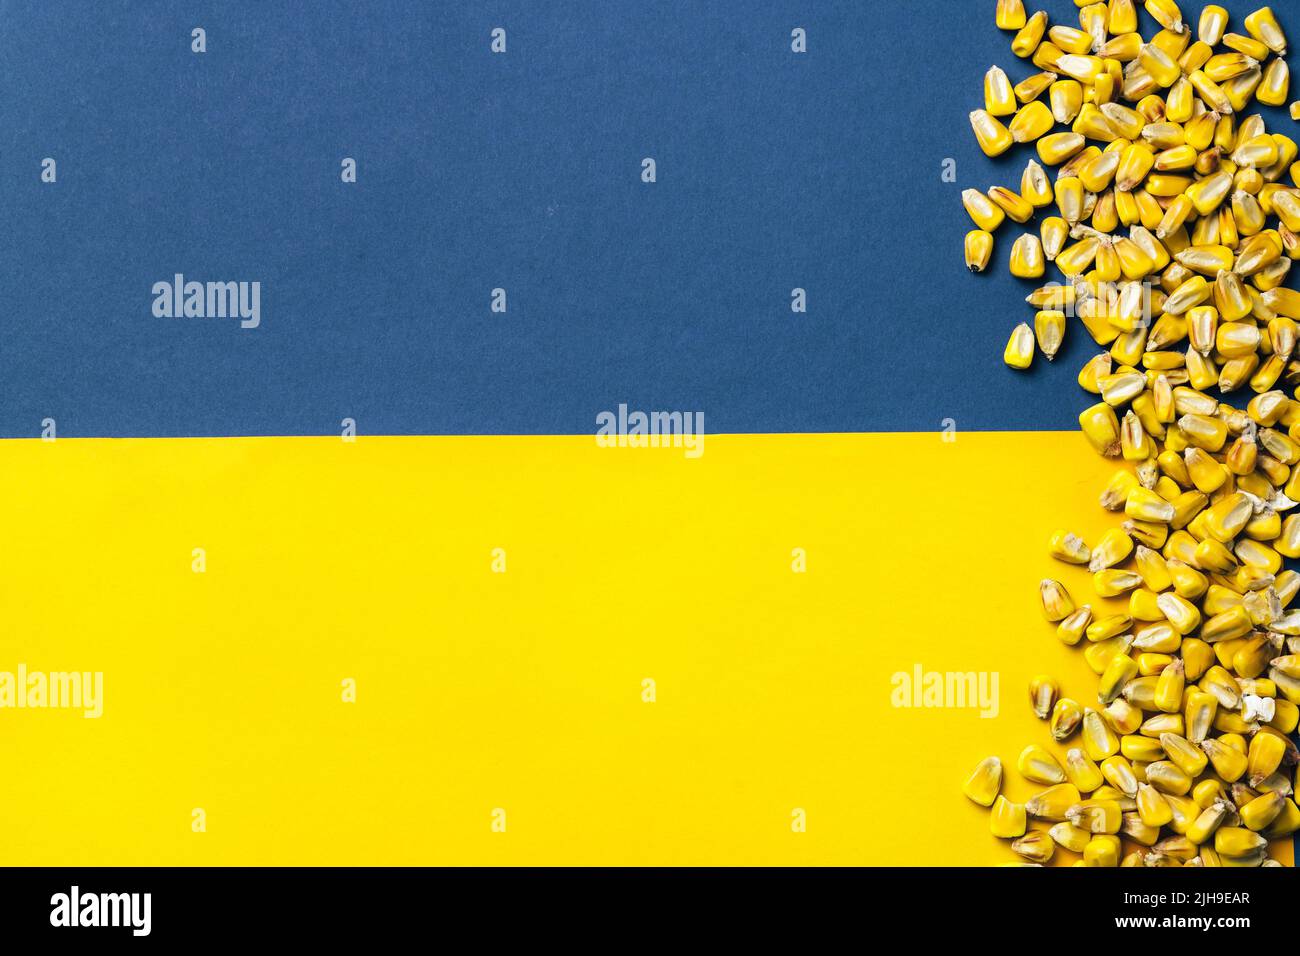 Granaglie di mais su sfondo bandiera ucraino. Crisi globale ed europea del grano e del grano dopo l'invasione russa dell'Ucraina 2022. Embargo e sanzione per l'esportazione di cereali Foto Stock